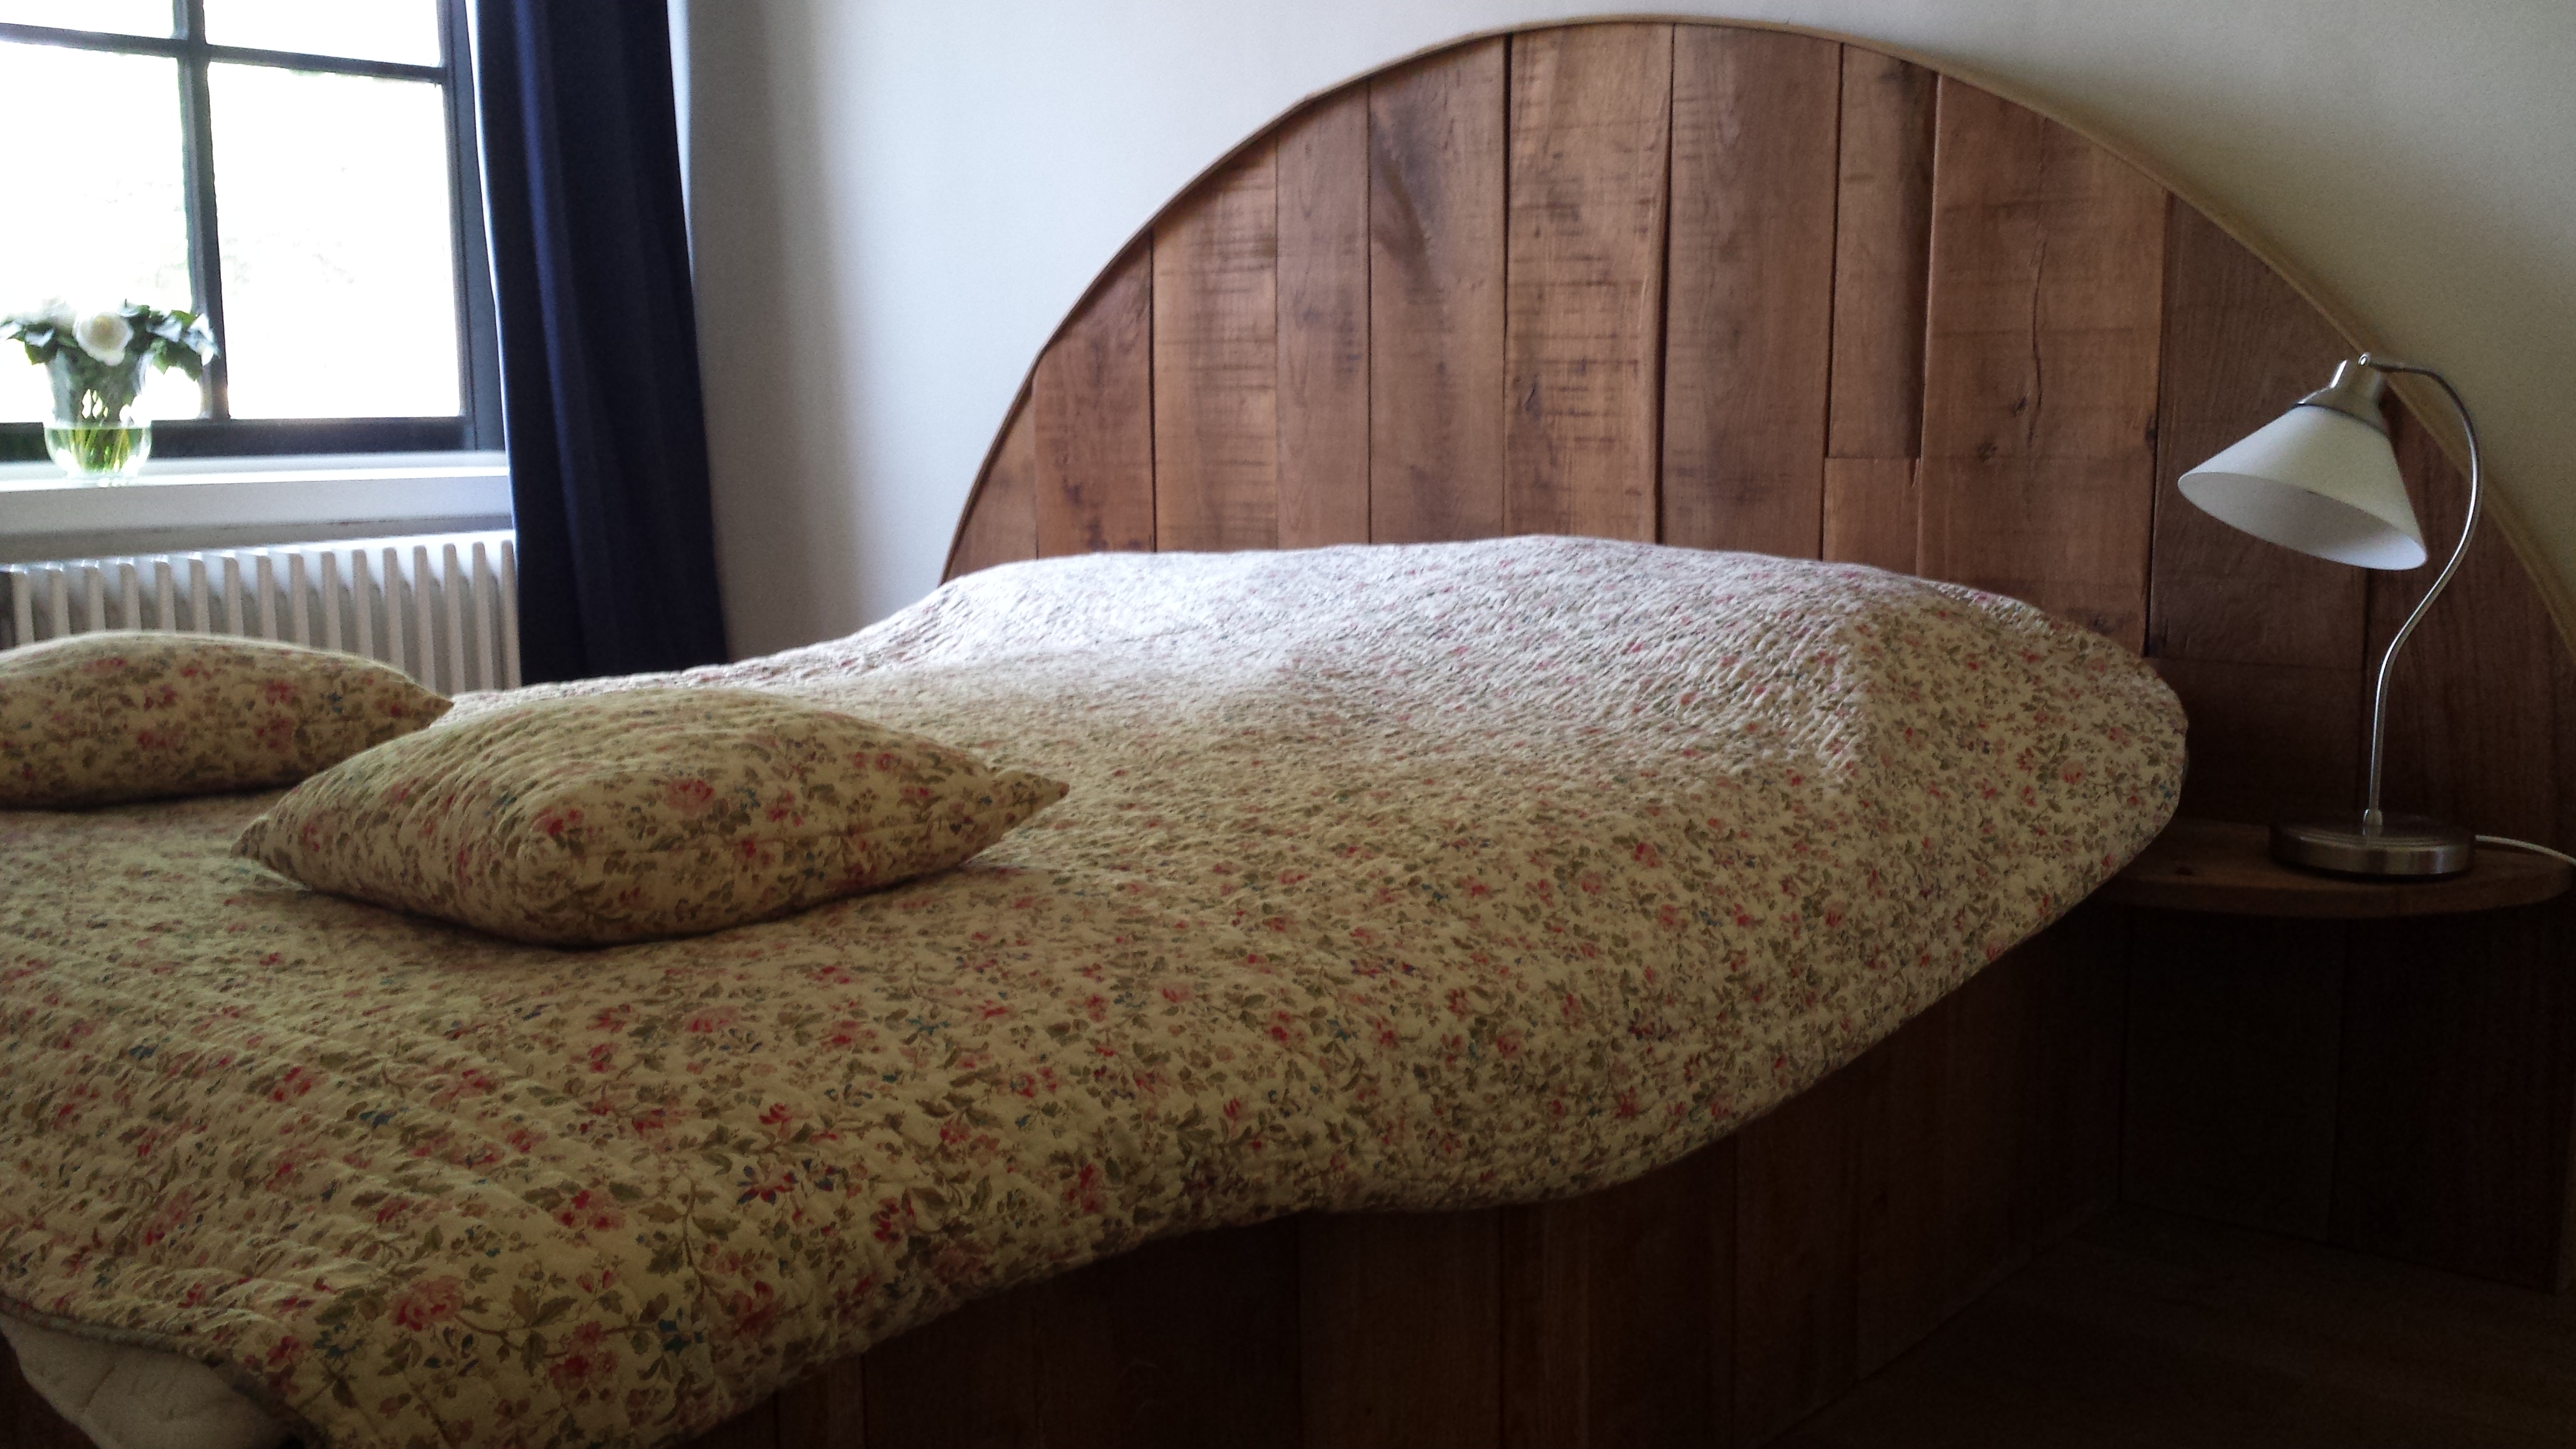 Speciale massief houten bedden. Een massief houten bed bouwen.